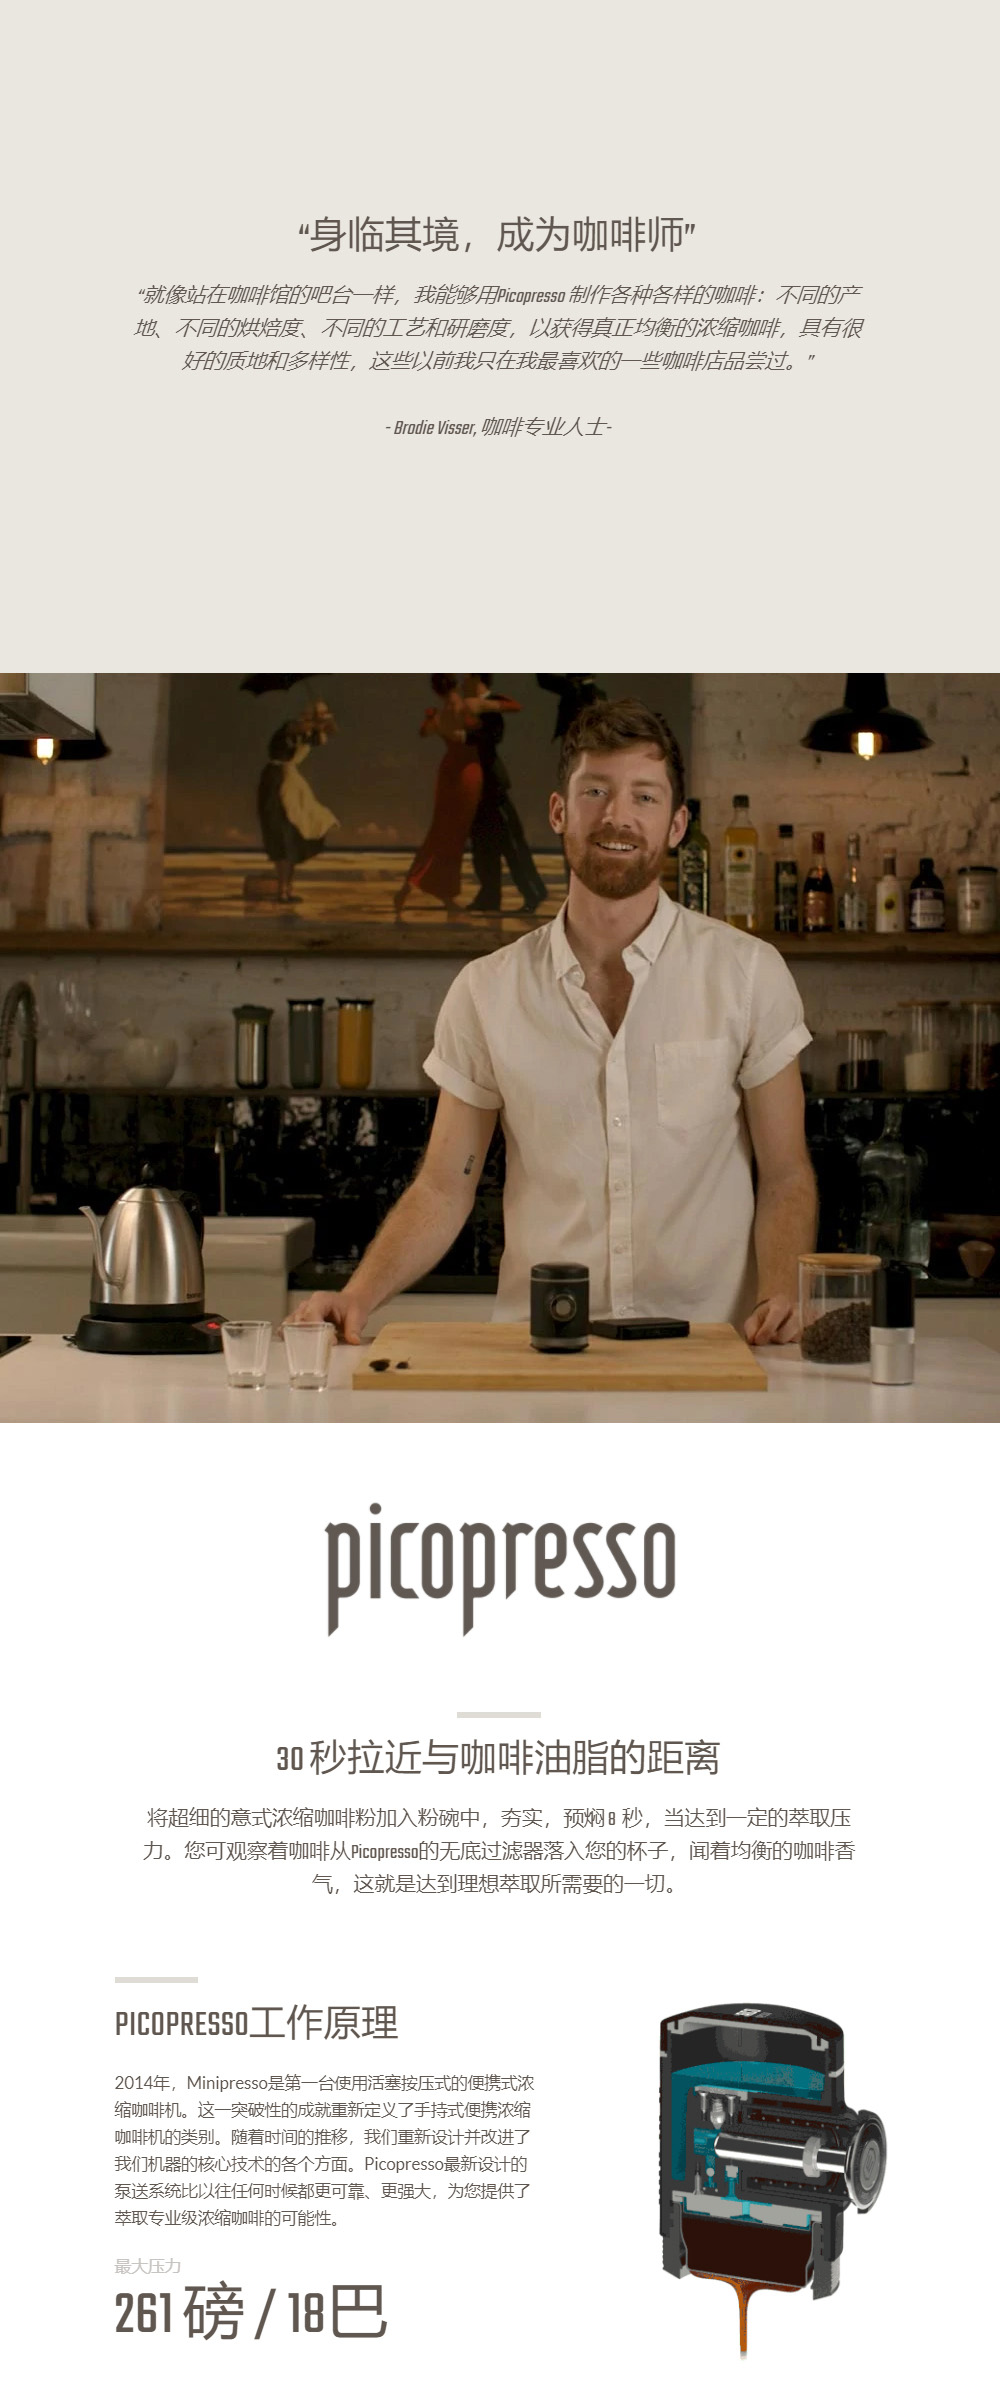 Picopresso